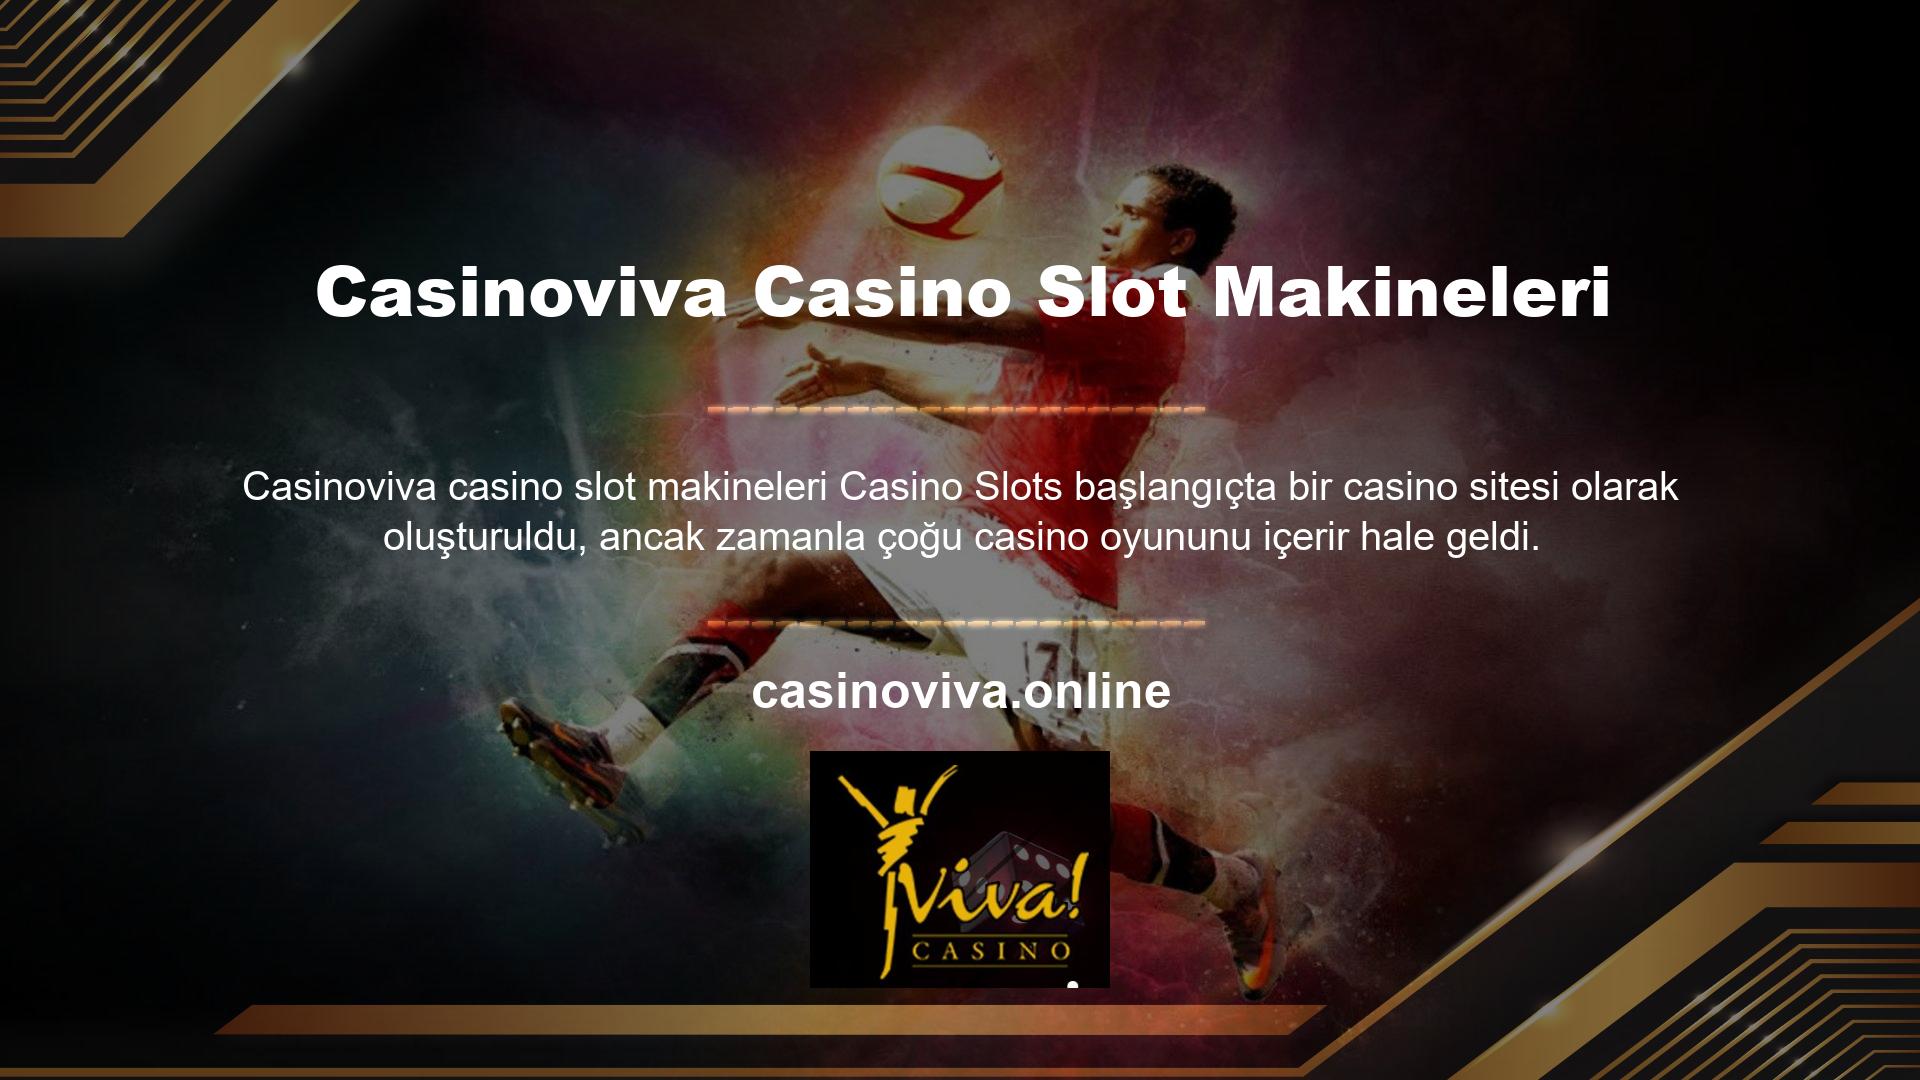 Casinoviva casino slot makineleri